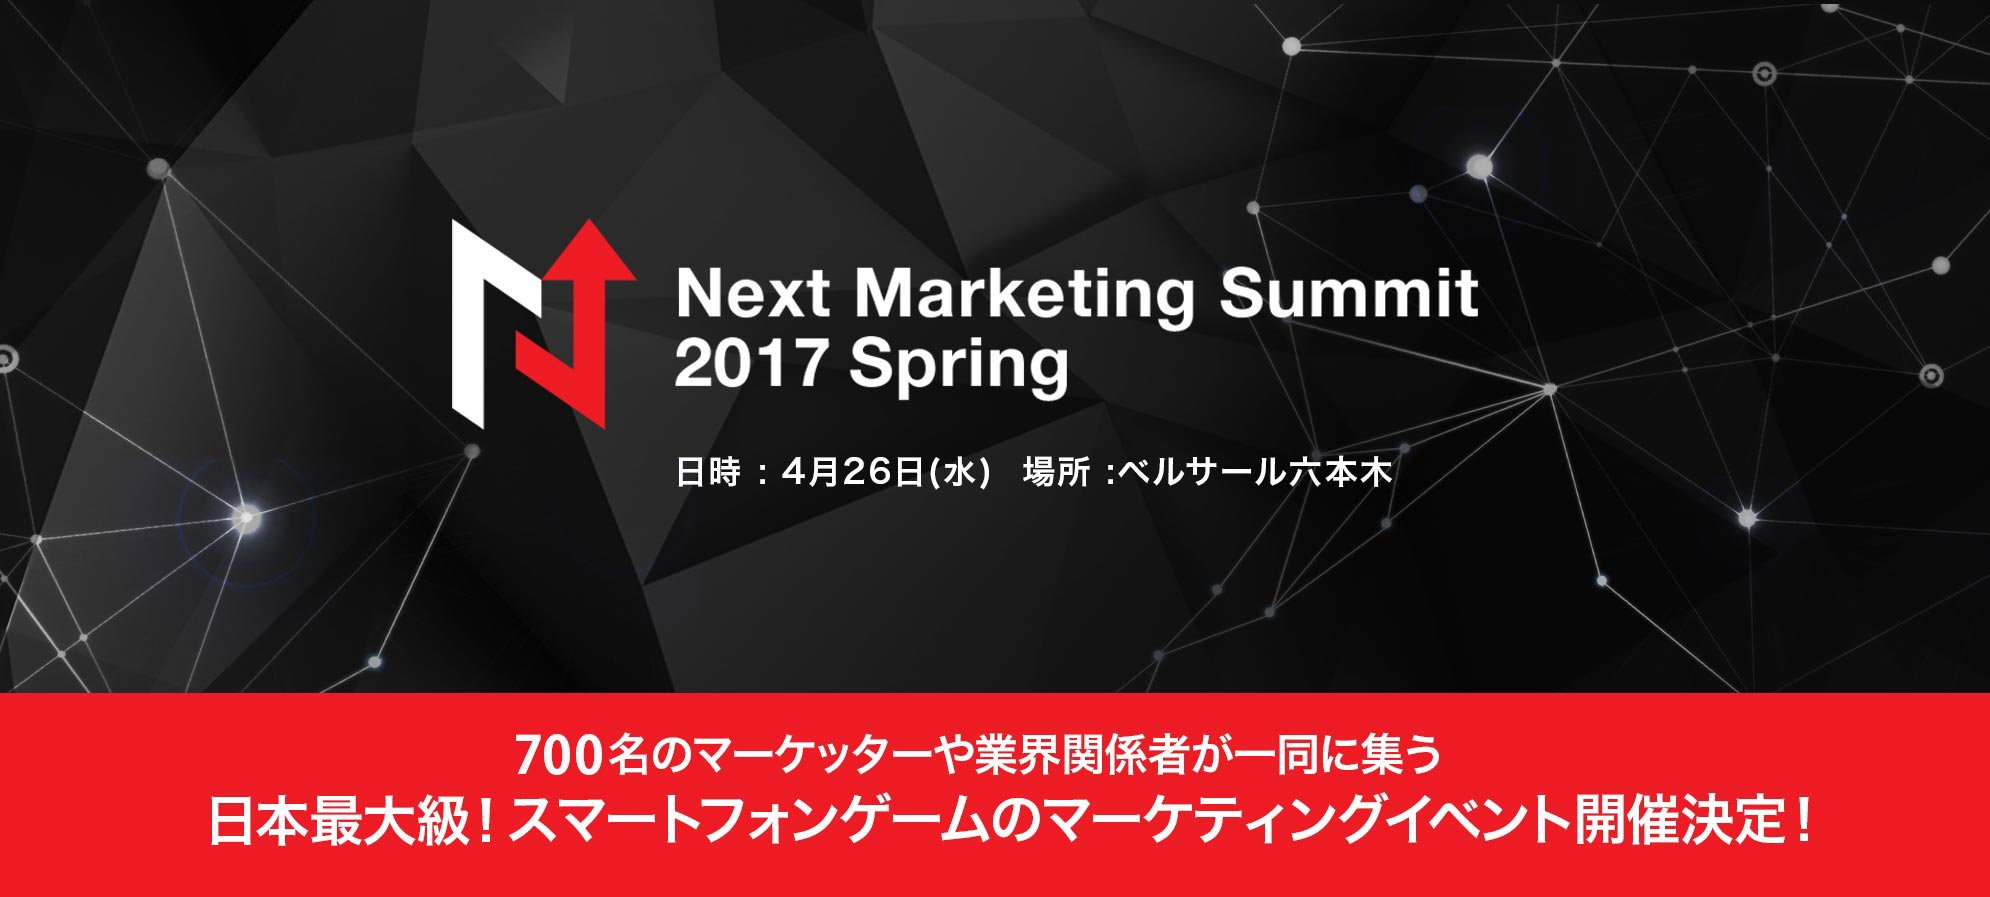 Next Marketing Summit 2017 Spring